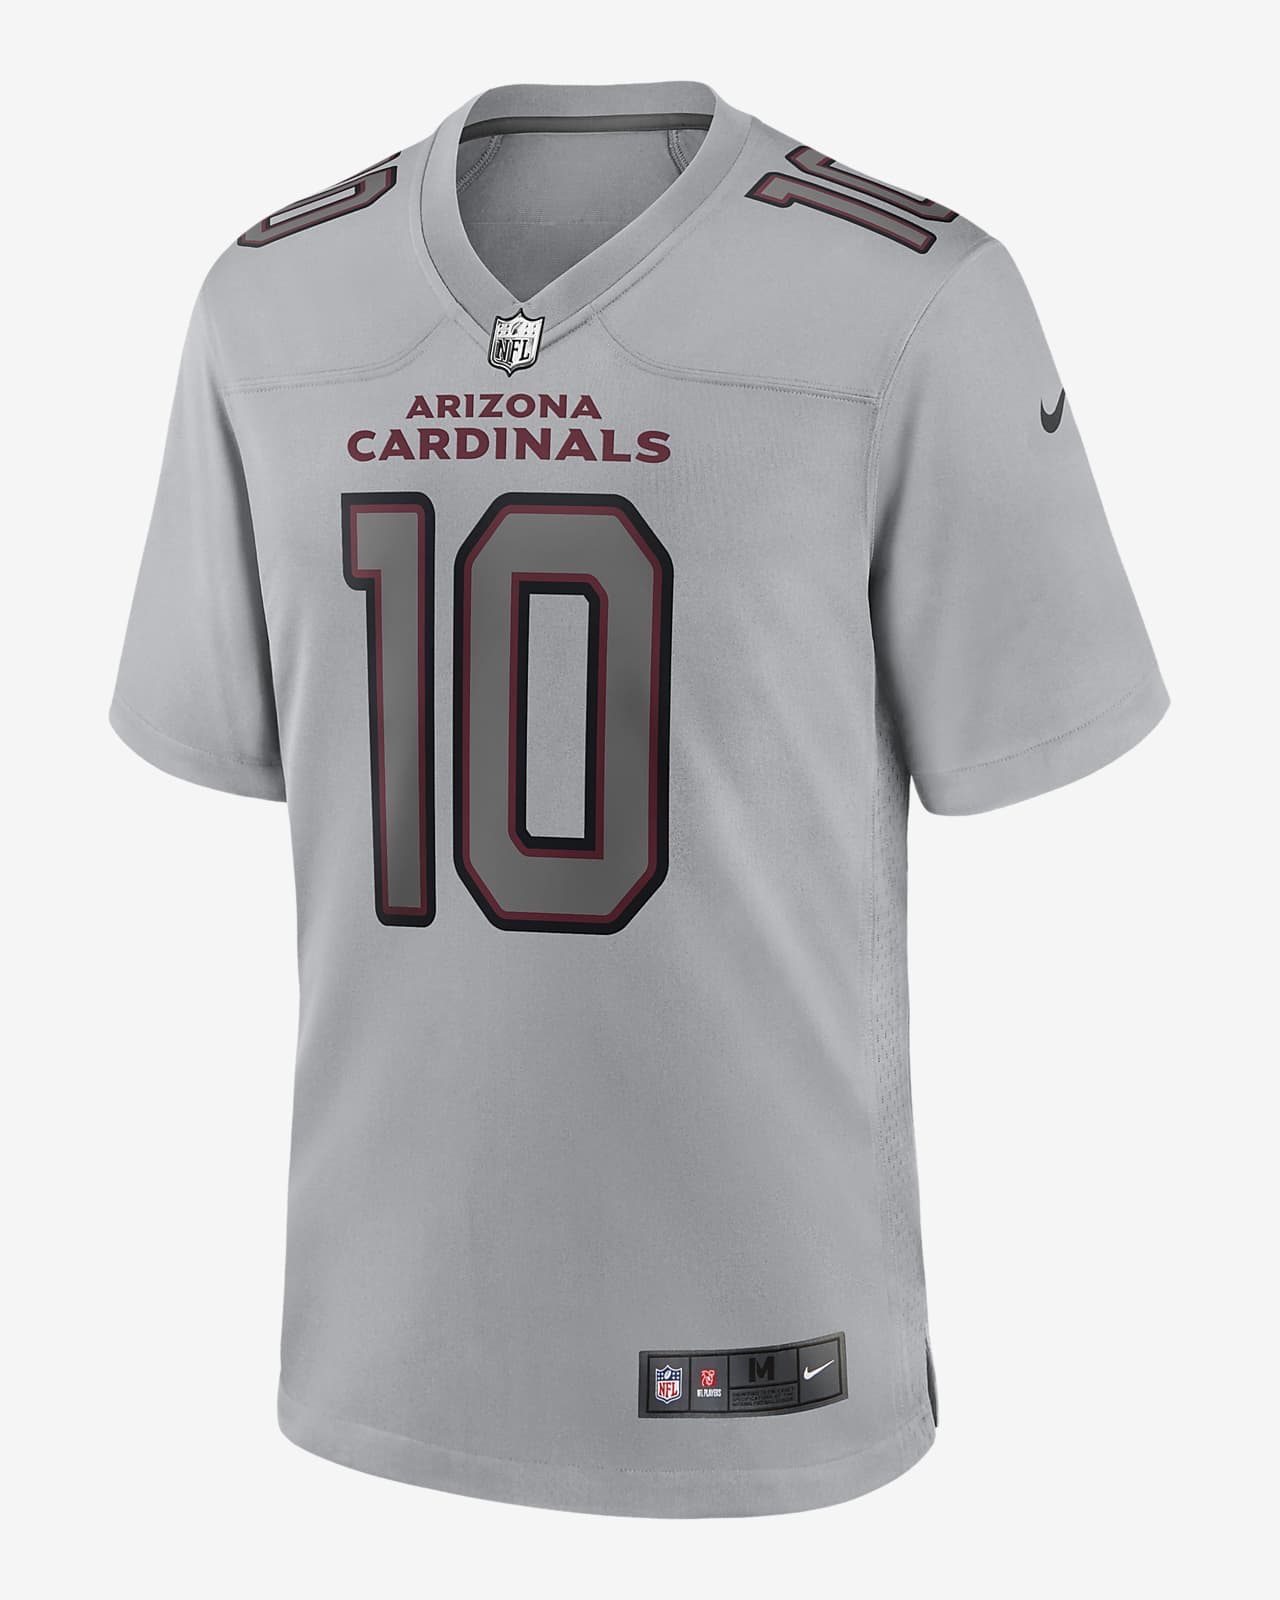 cardinals gray jersey